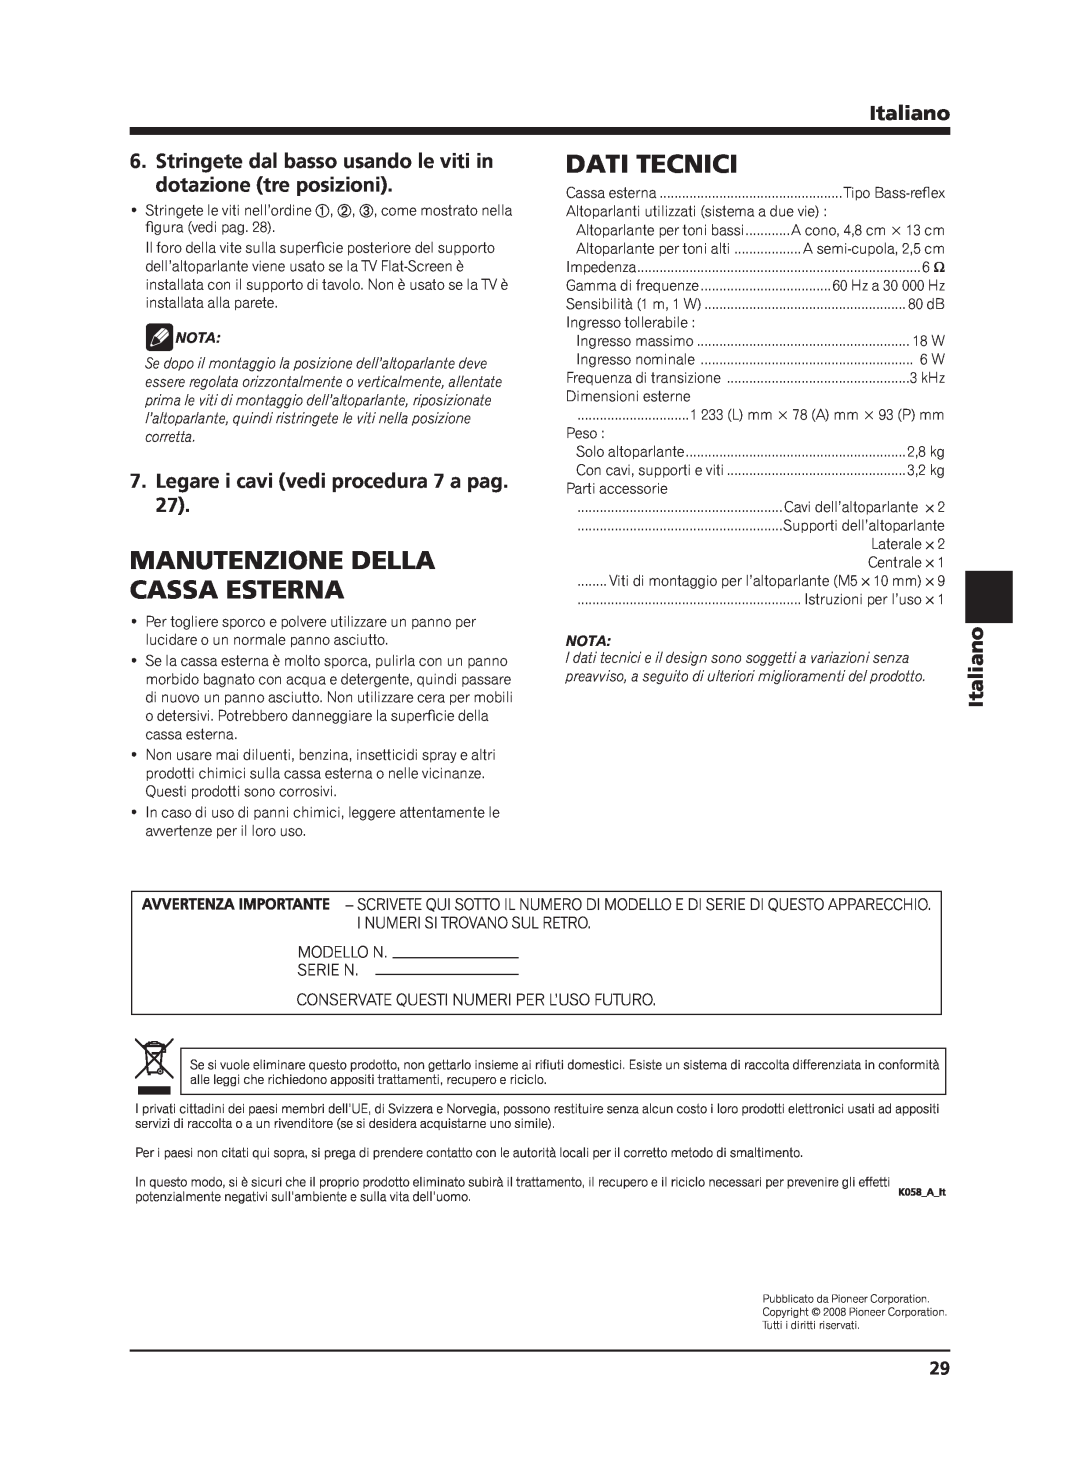 Pioneer PDP-S63 Dati Tecnici, Manutenzione Della, Cassa Esterna, Stringete dal basso usando le viti in, Italiano, Nota 